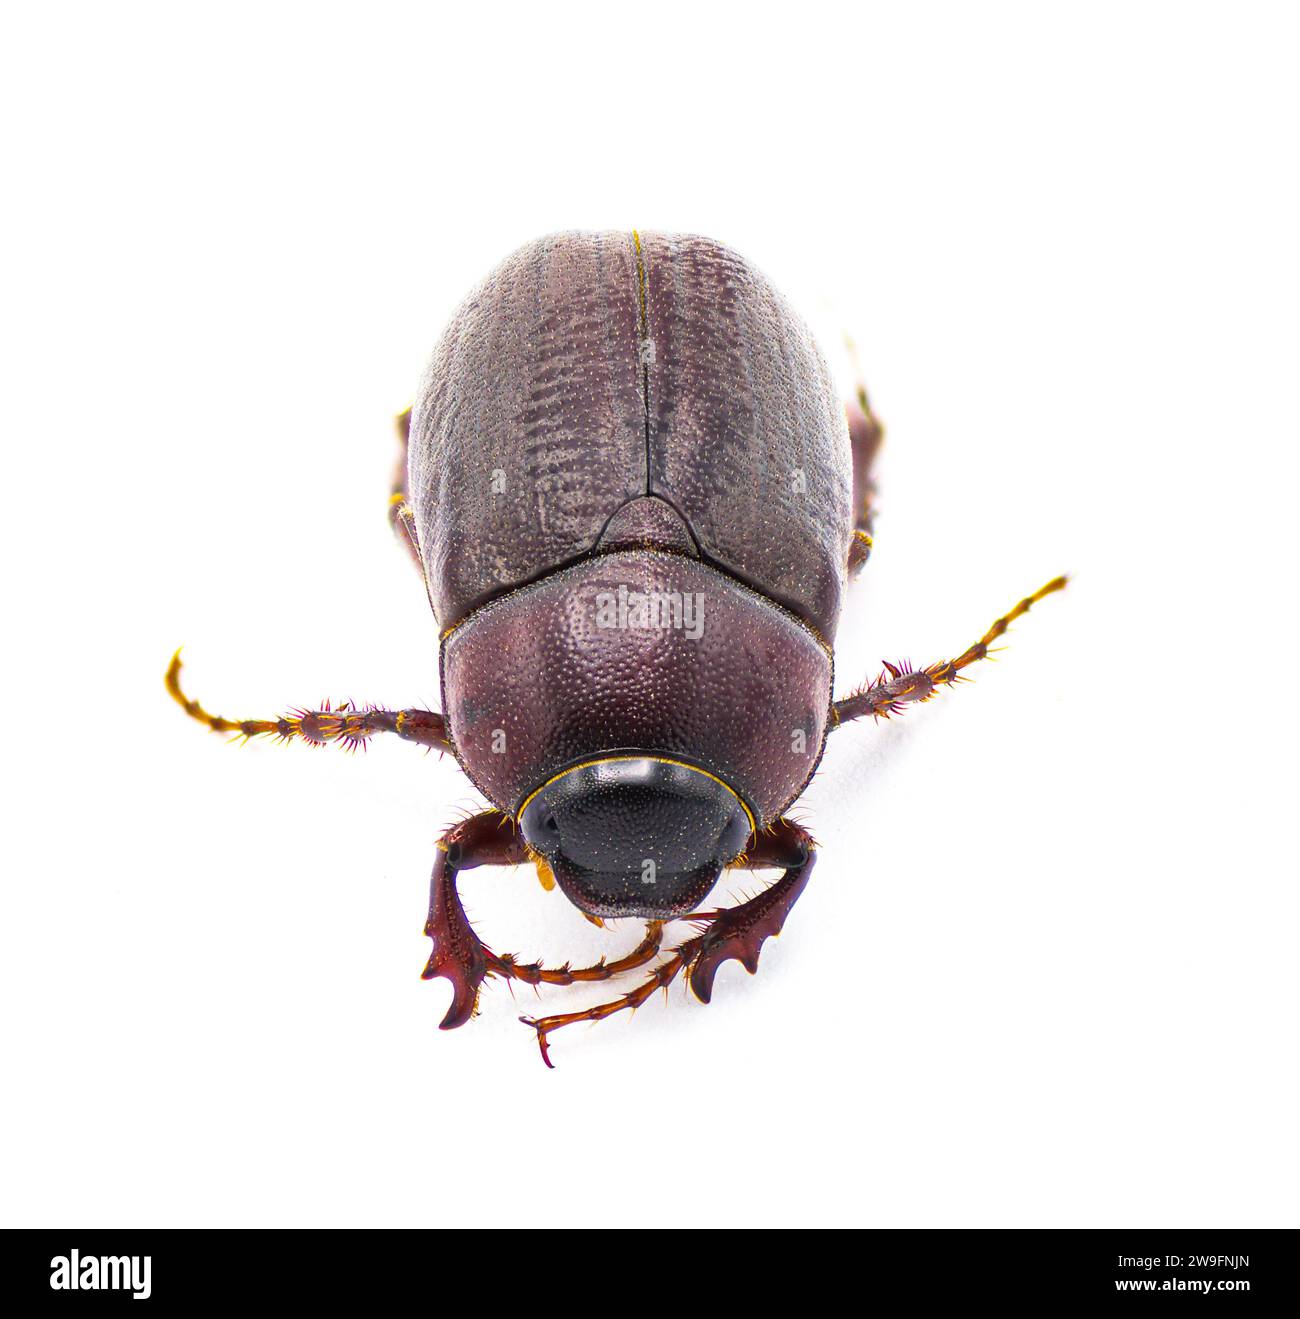 Insecte insecte brun du coléoptère - Diplotaxis punctatorugosa - un scarabée trouvé en Floride, isolé sur fond blanc vue de profil latéral Banque D'Images